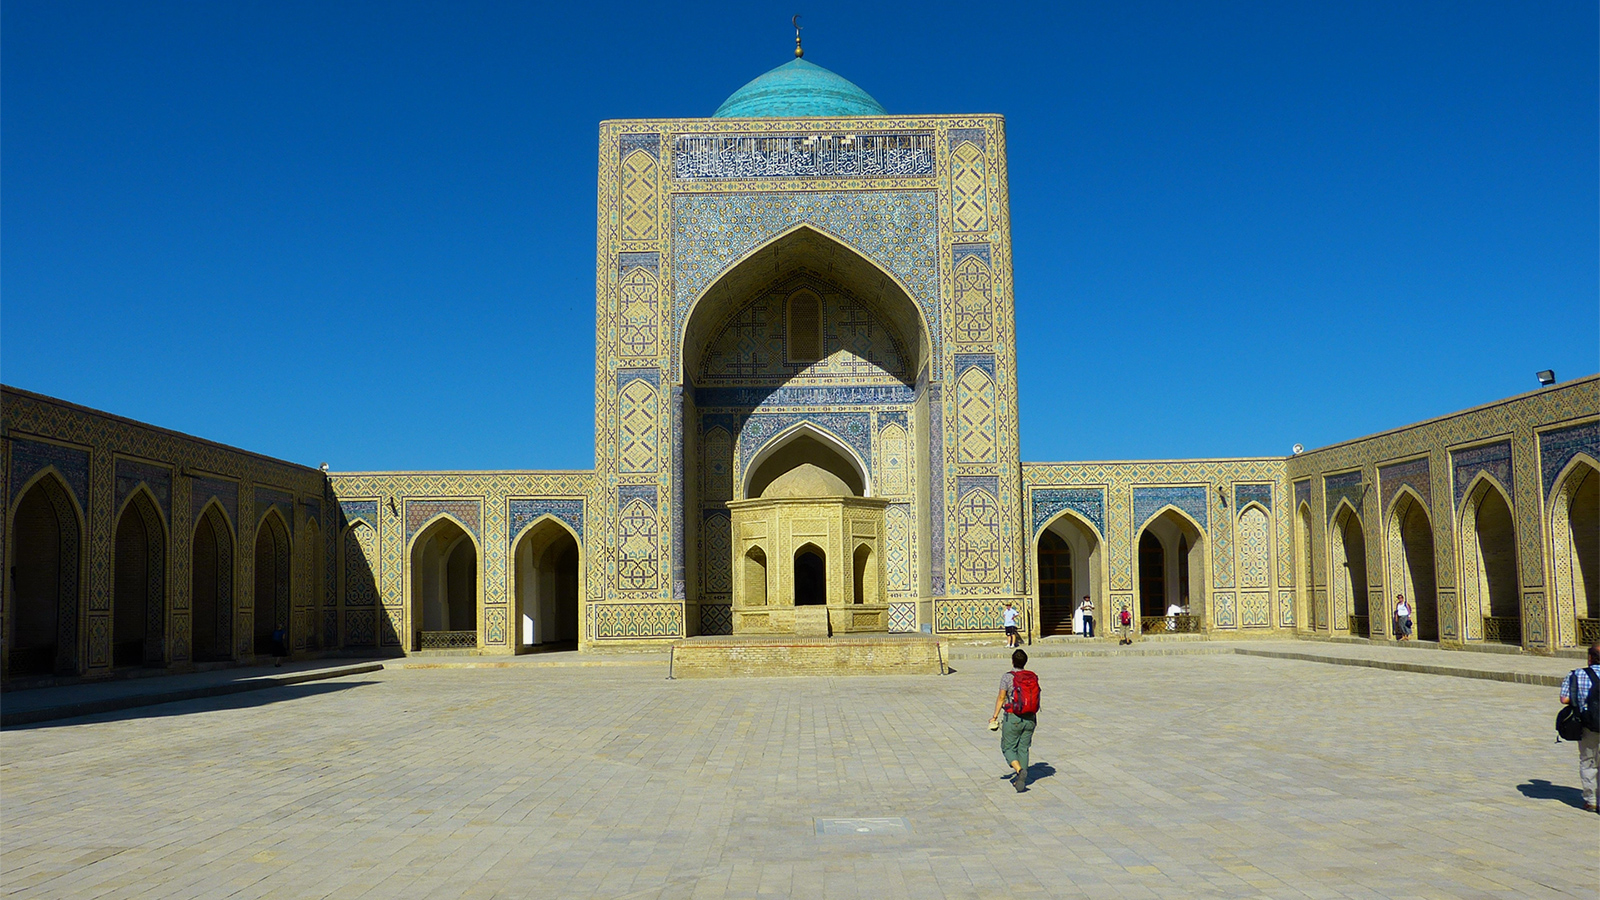  حسب مصادر تاريخية فإن بخارى كانت أولى الحواضر الإسلامية بآسيا الوسطى التي أعطت اهتماما خاصا لتنوير المساجد في رمضان (الصحافة الأجنبية) 